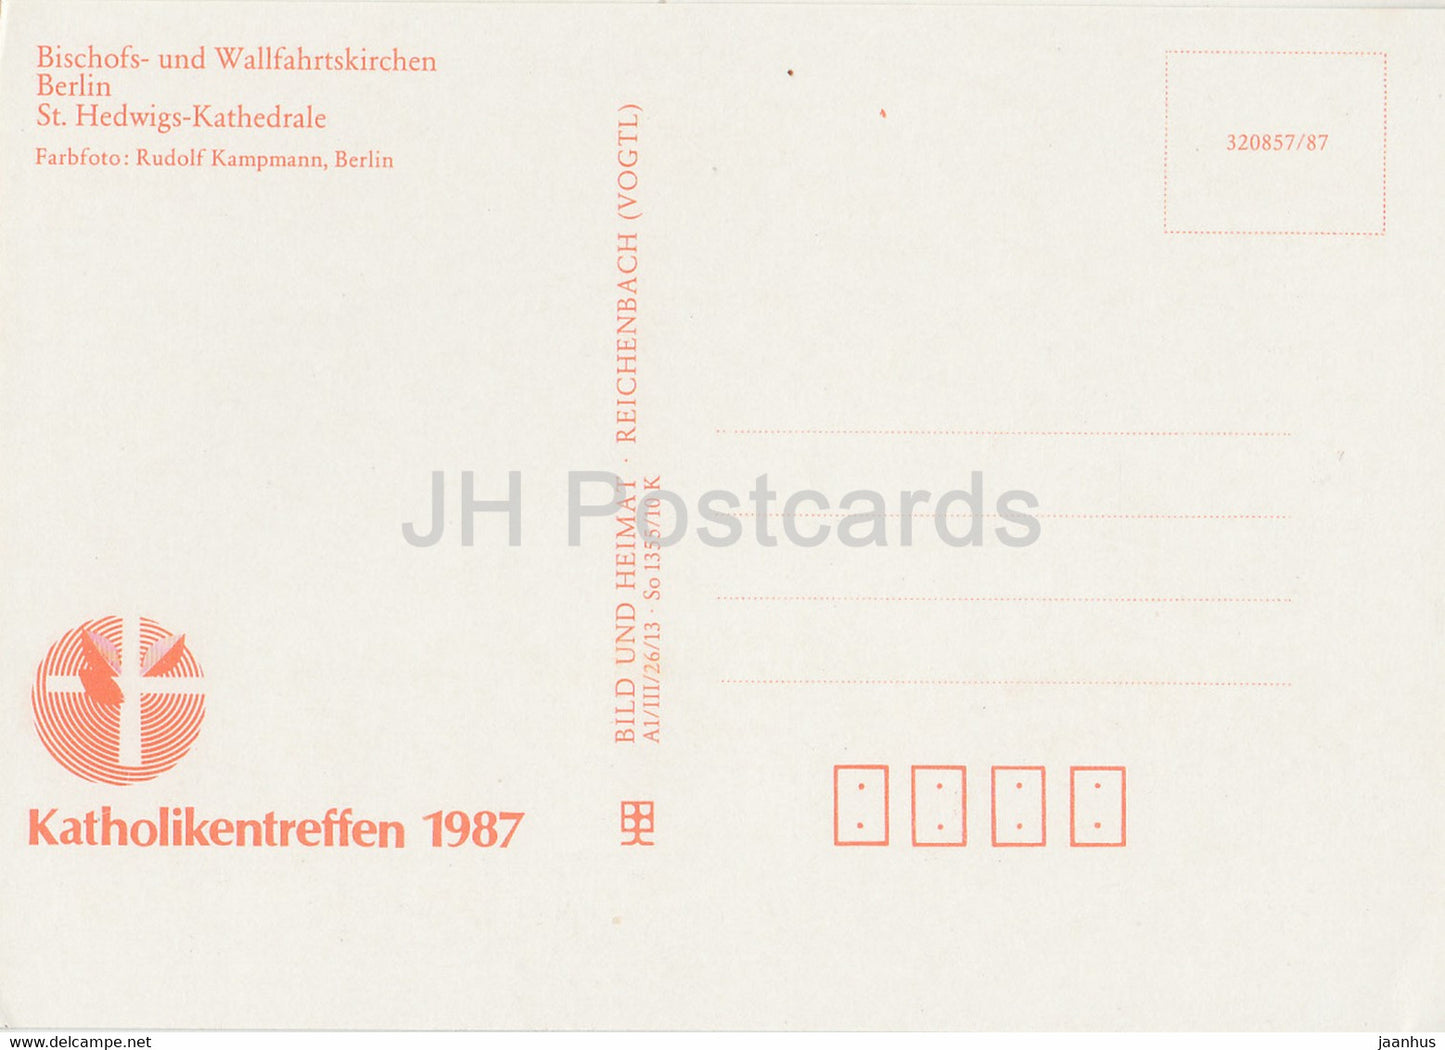 Berlin - St Hedwigs Kathedrale - voitures - Bischofs- und Wallfahrtskirchen - église - 1987 - DDR Allemagne - inutilisé